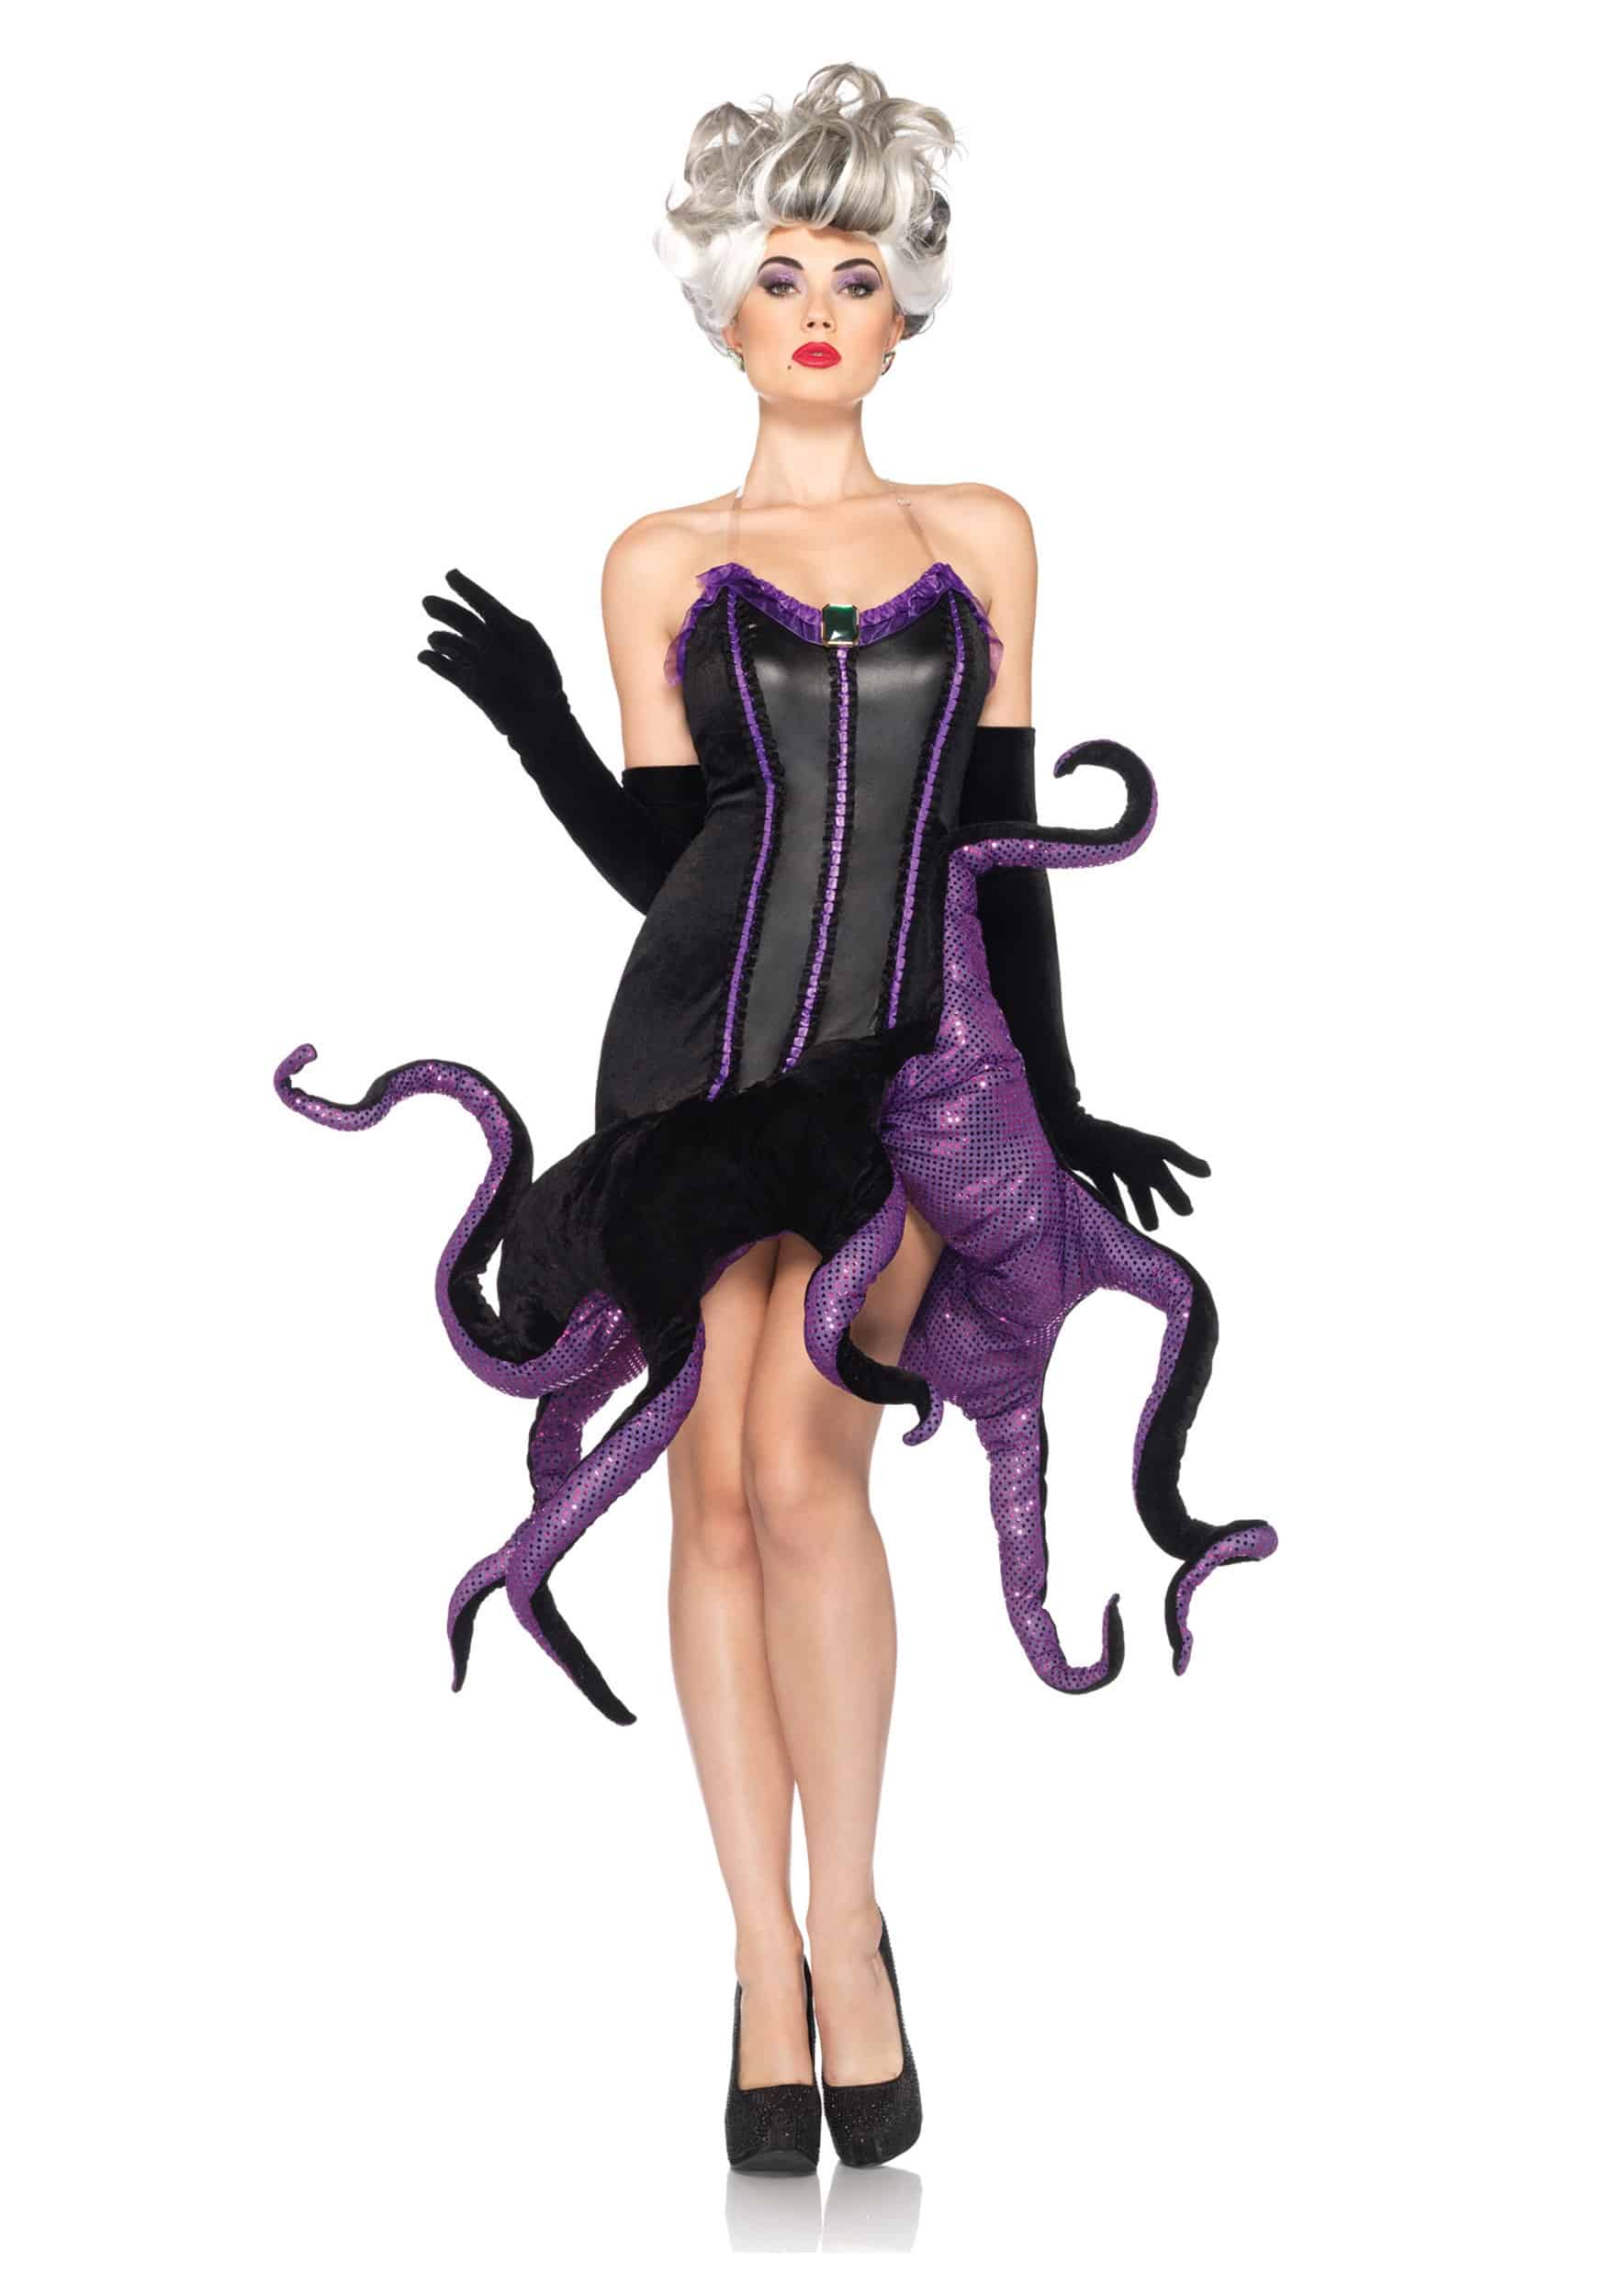 Leg Avenue Ursula Velvet Dress with Tentacle Skirt Dress as a Villain in Halloween